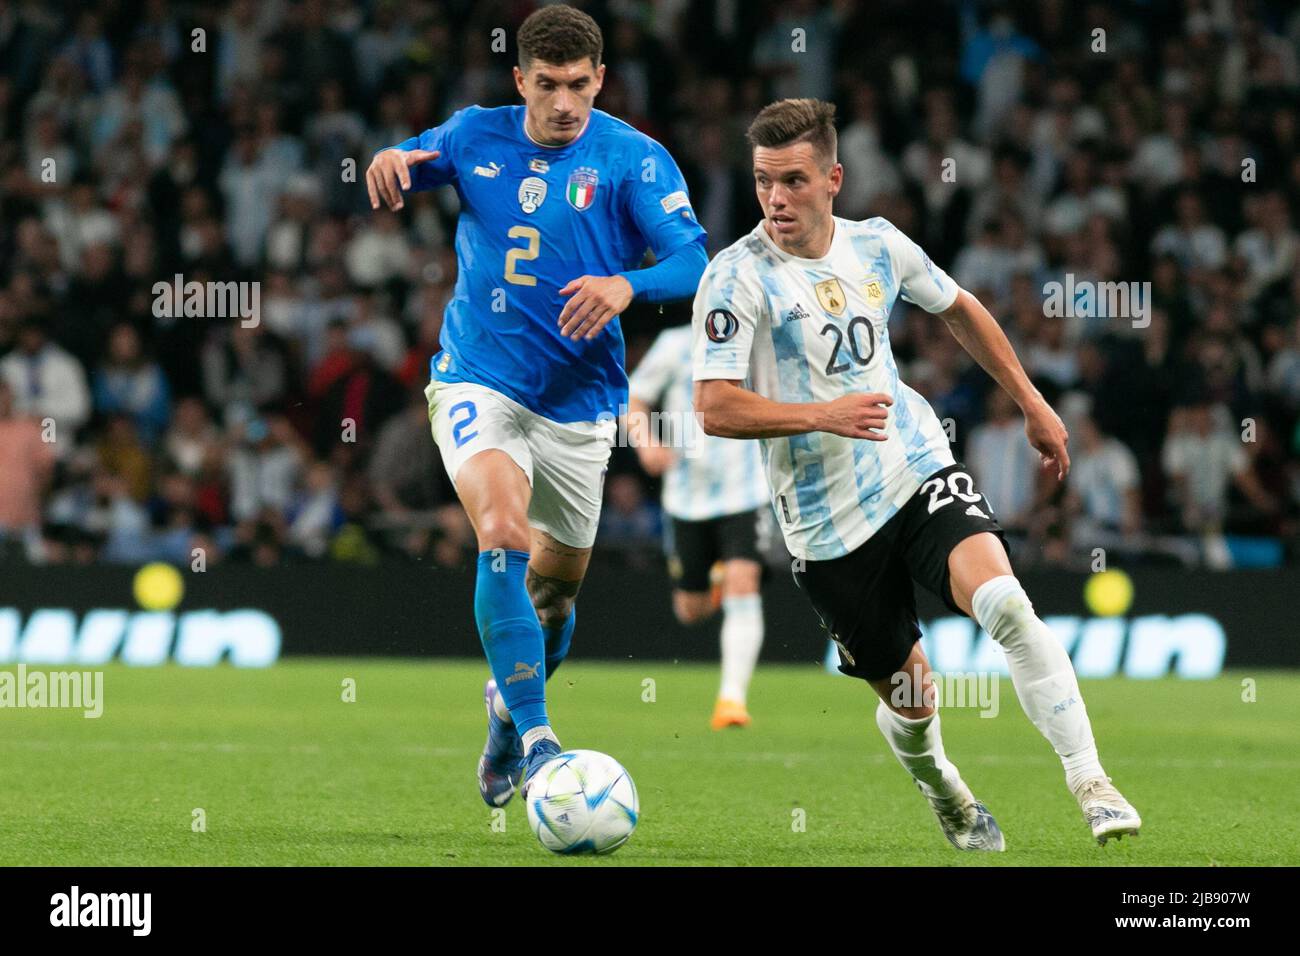 Giovani Lo Celso d'Argentine est défié par Giovanni Di Lorenzo d'Italie lors du match Italie contre Argentine - Finalissima 2022 au stade Wembley sur 1 juin 2022 à Londres, Angleterre.(MB Media) Banque D'Images